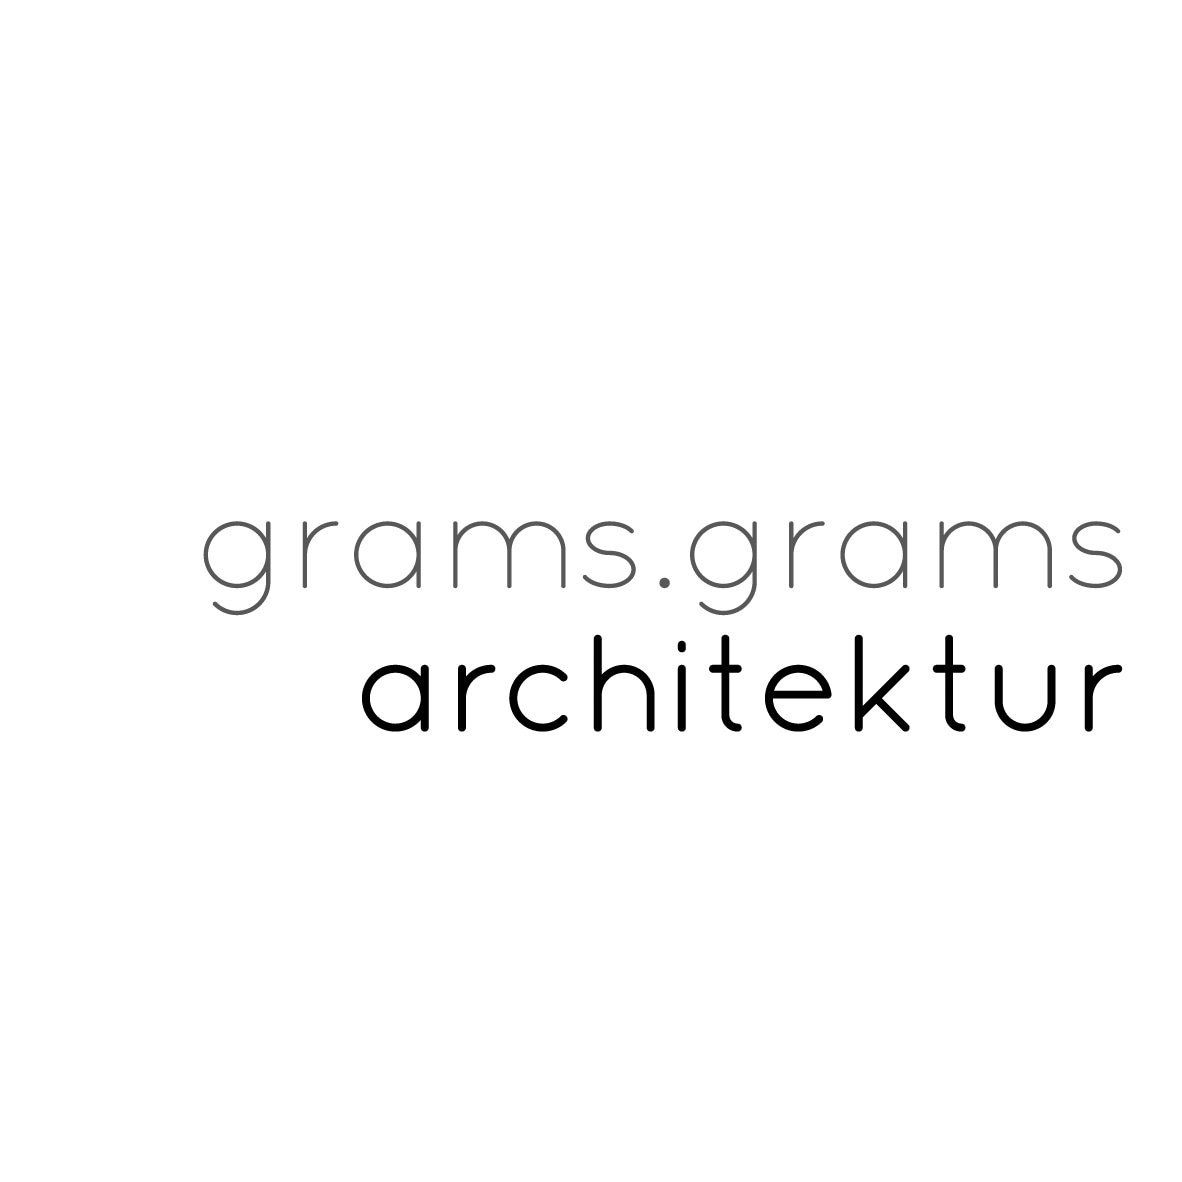 Logo der Firma Grams.grams architektur aus Wörth